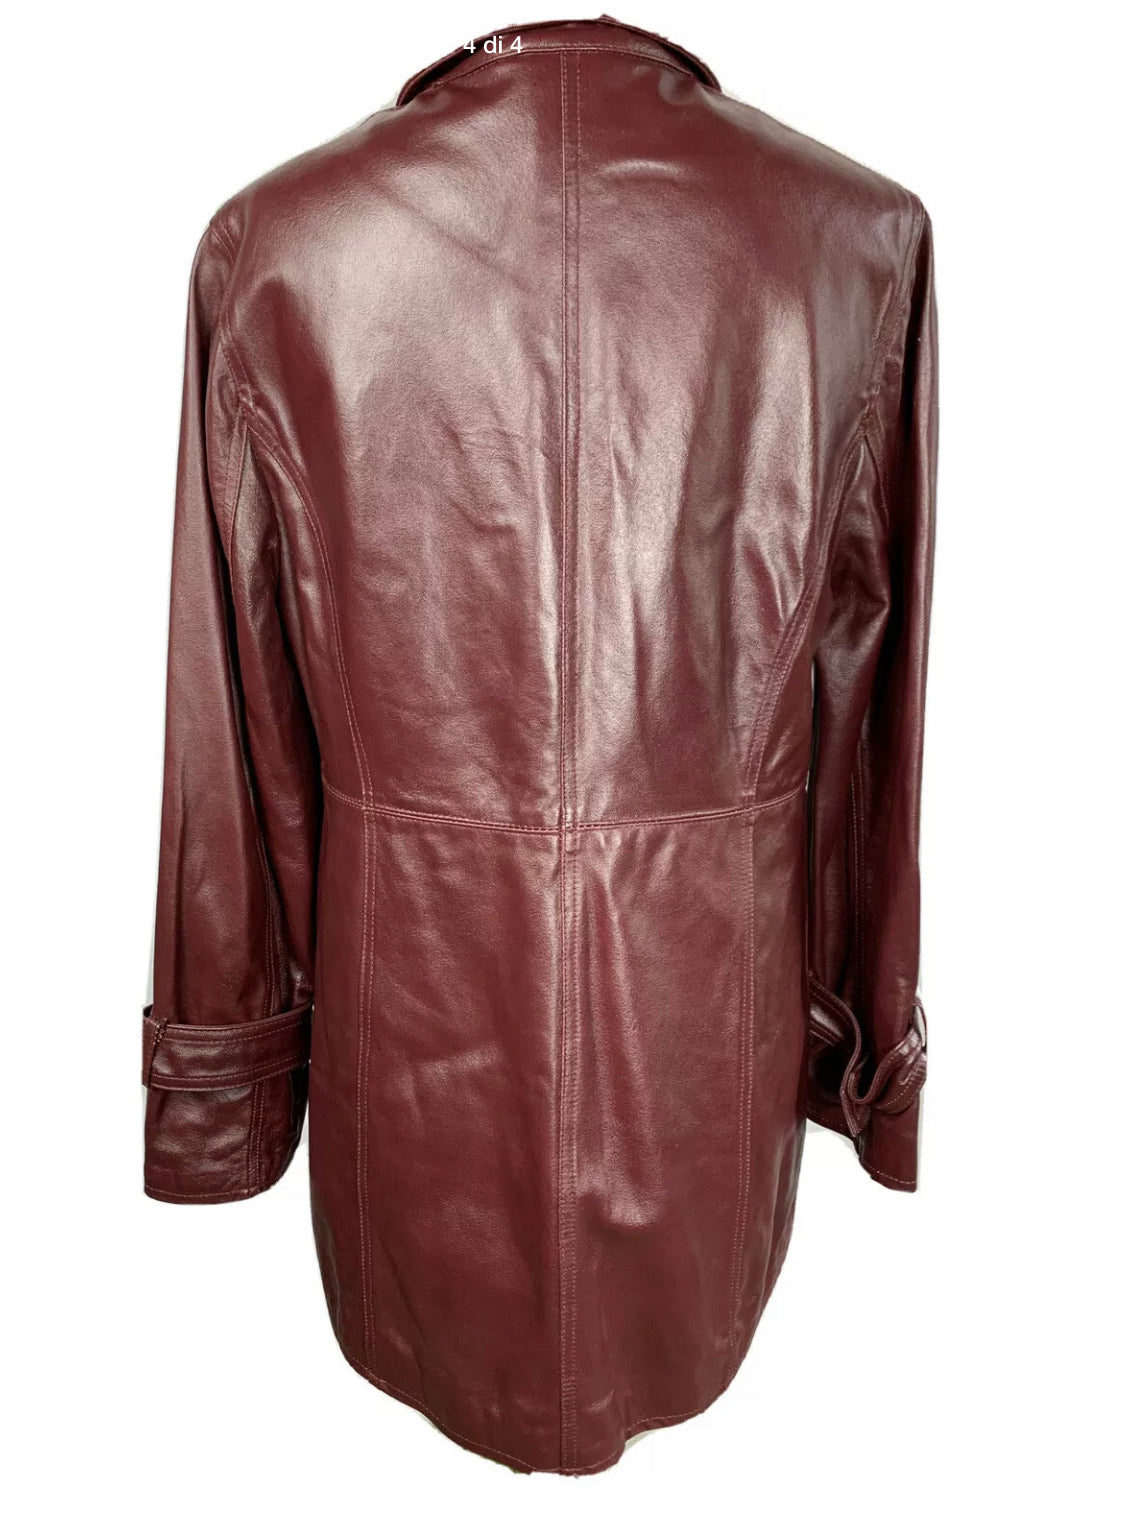 Motivi leather jacket coat size M 